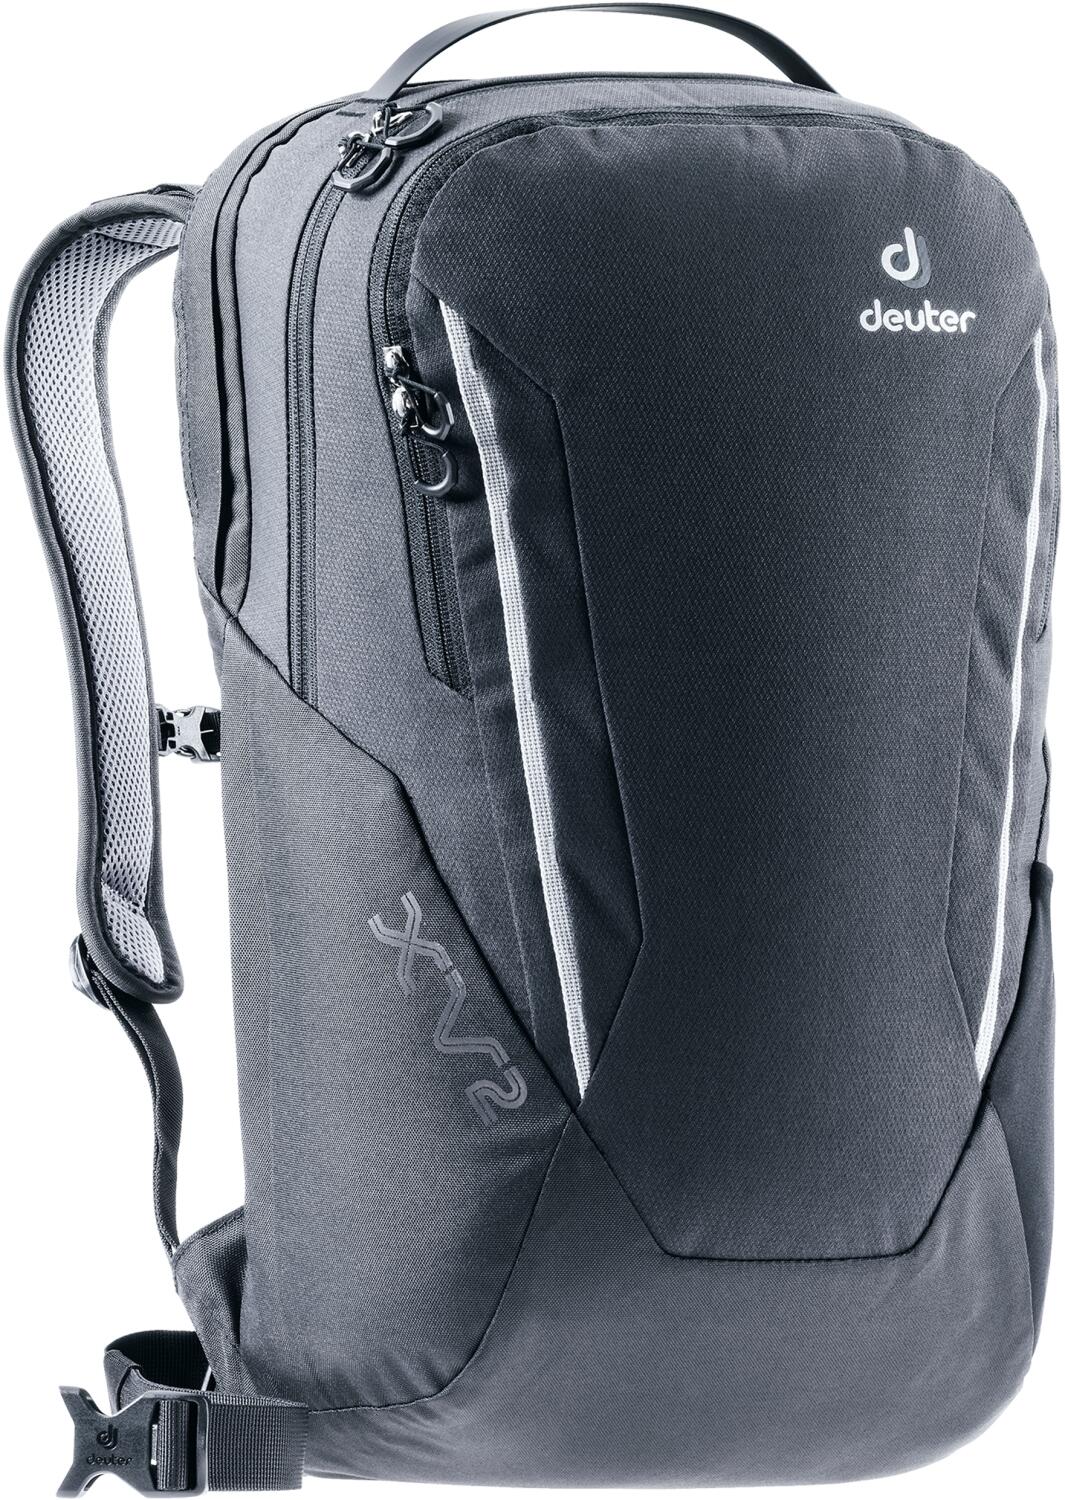 Deuter XV 2 SL Damen Rucksack (Farbe: 7000 black) günstig online kaufen